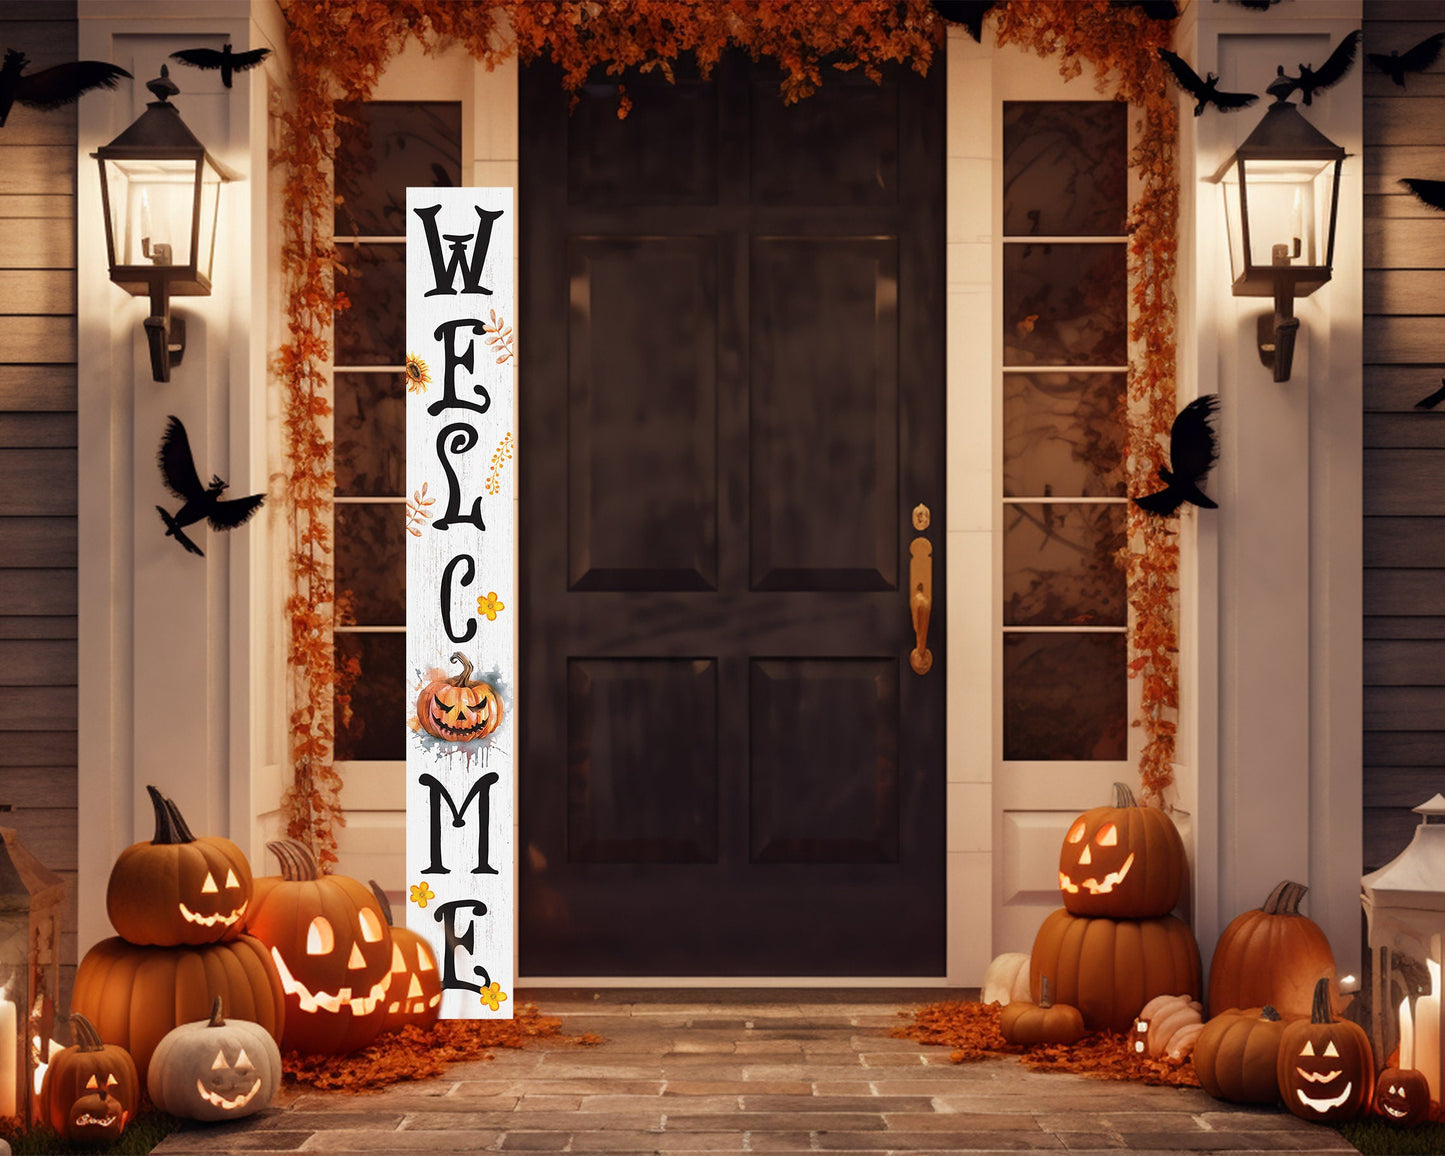 72in Jack-o-Lantern Halloween Porch Sign - Front Porch Halloween Welcome Sign with Halloween Decoration, Farmhouse Entryway Porch Decor